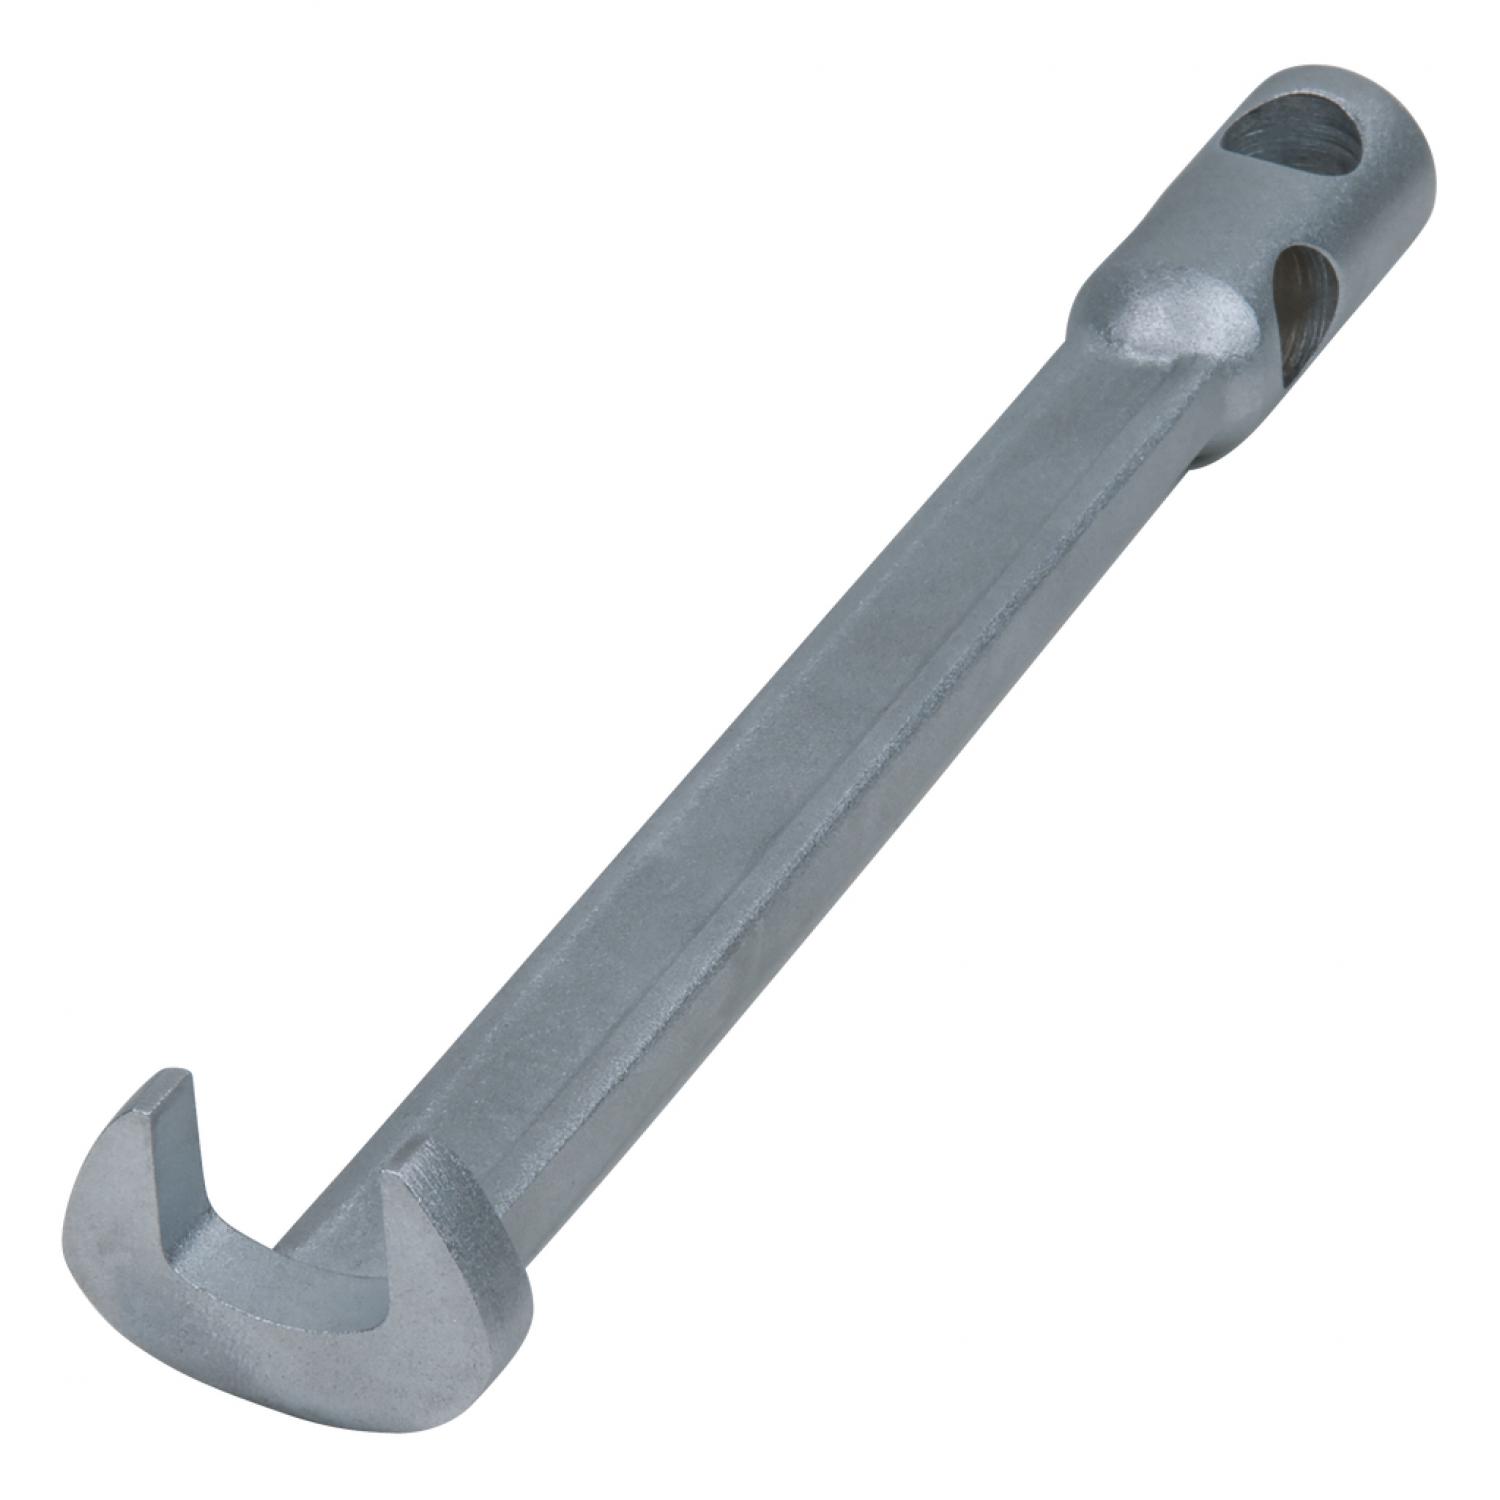 Гаечный ключ с открытым загнутым зевом без штифтовой ручки, 21 мм